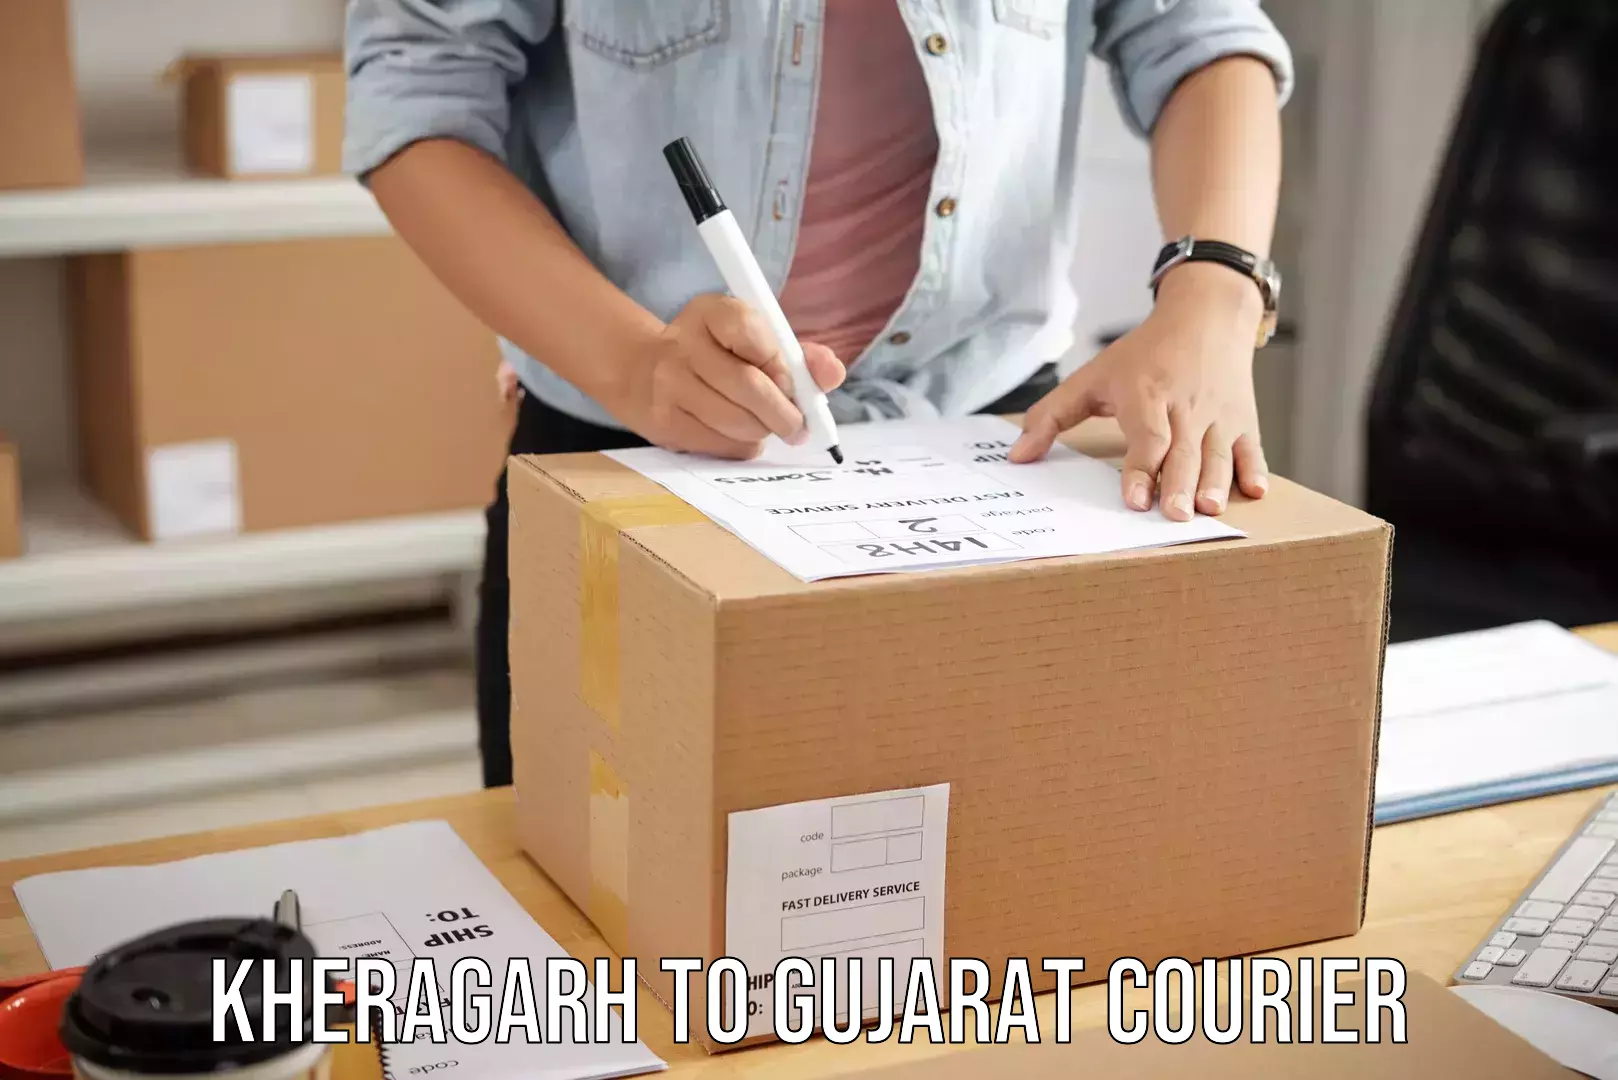 Baggage transport scheduler Kheragarh to Gujarat